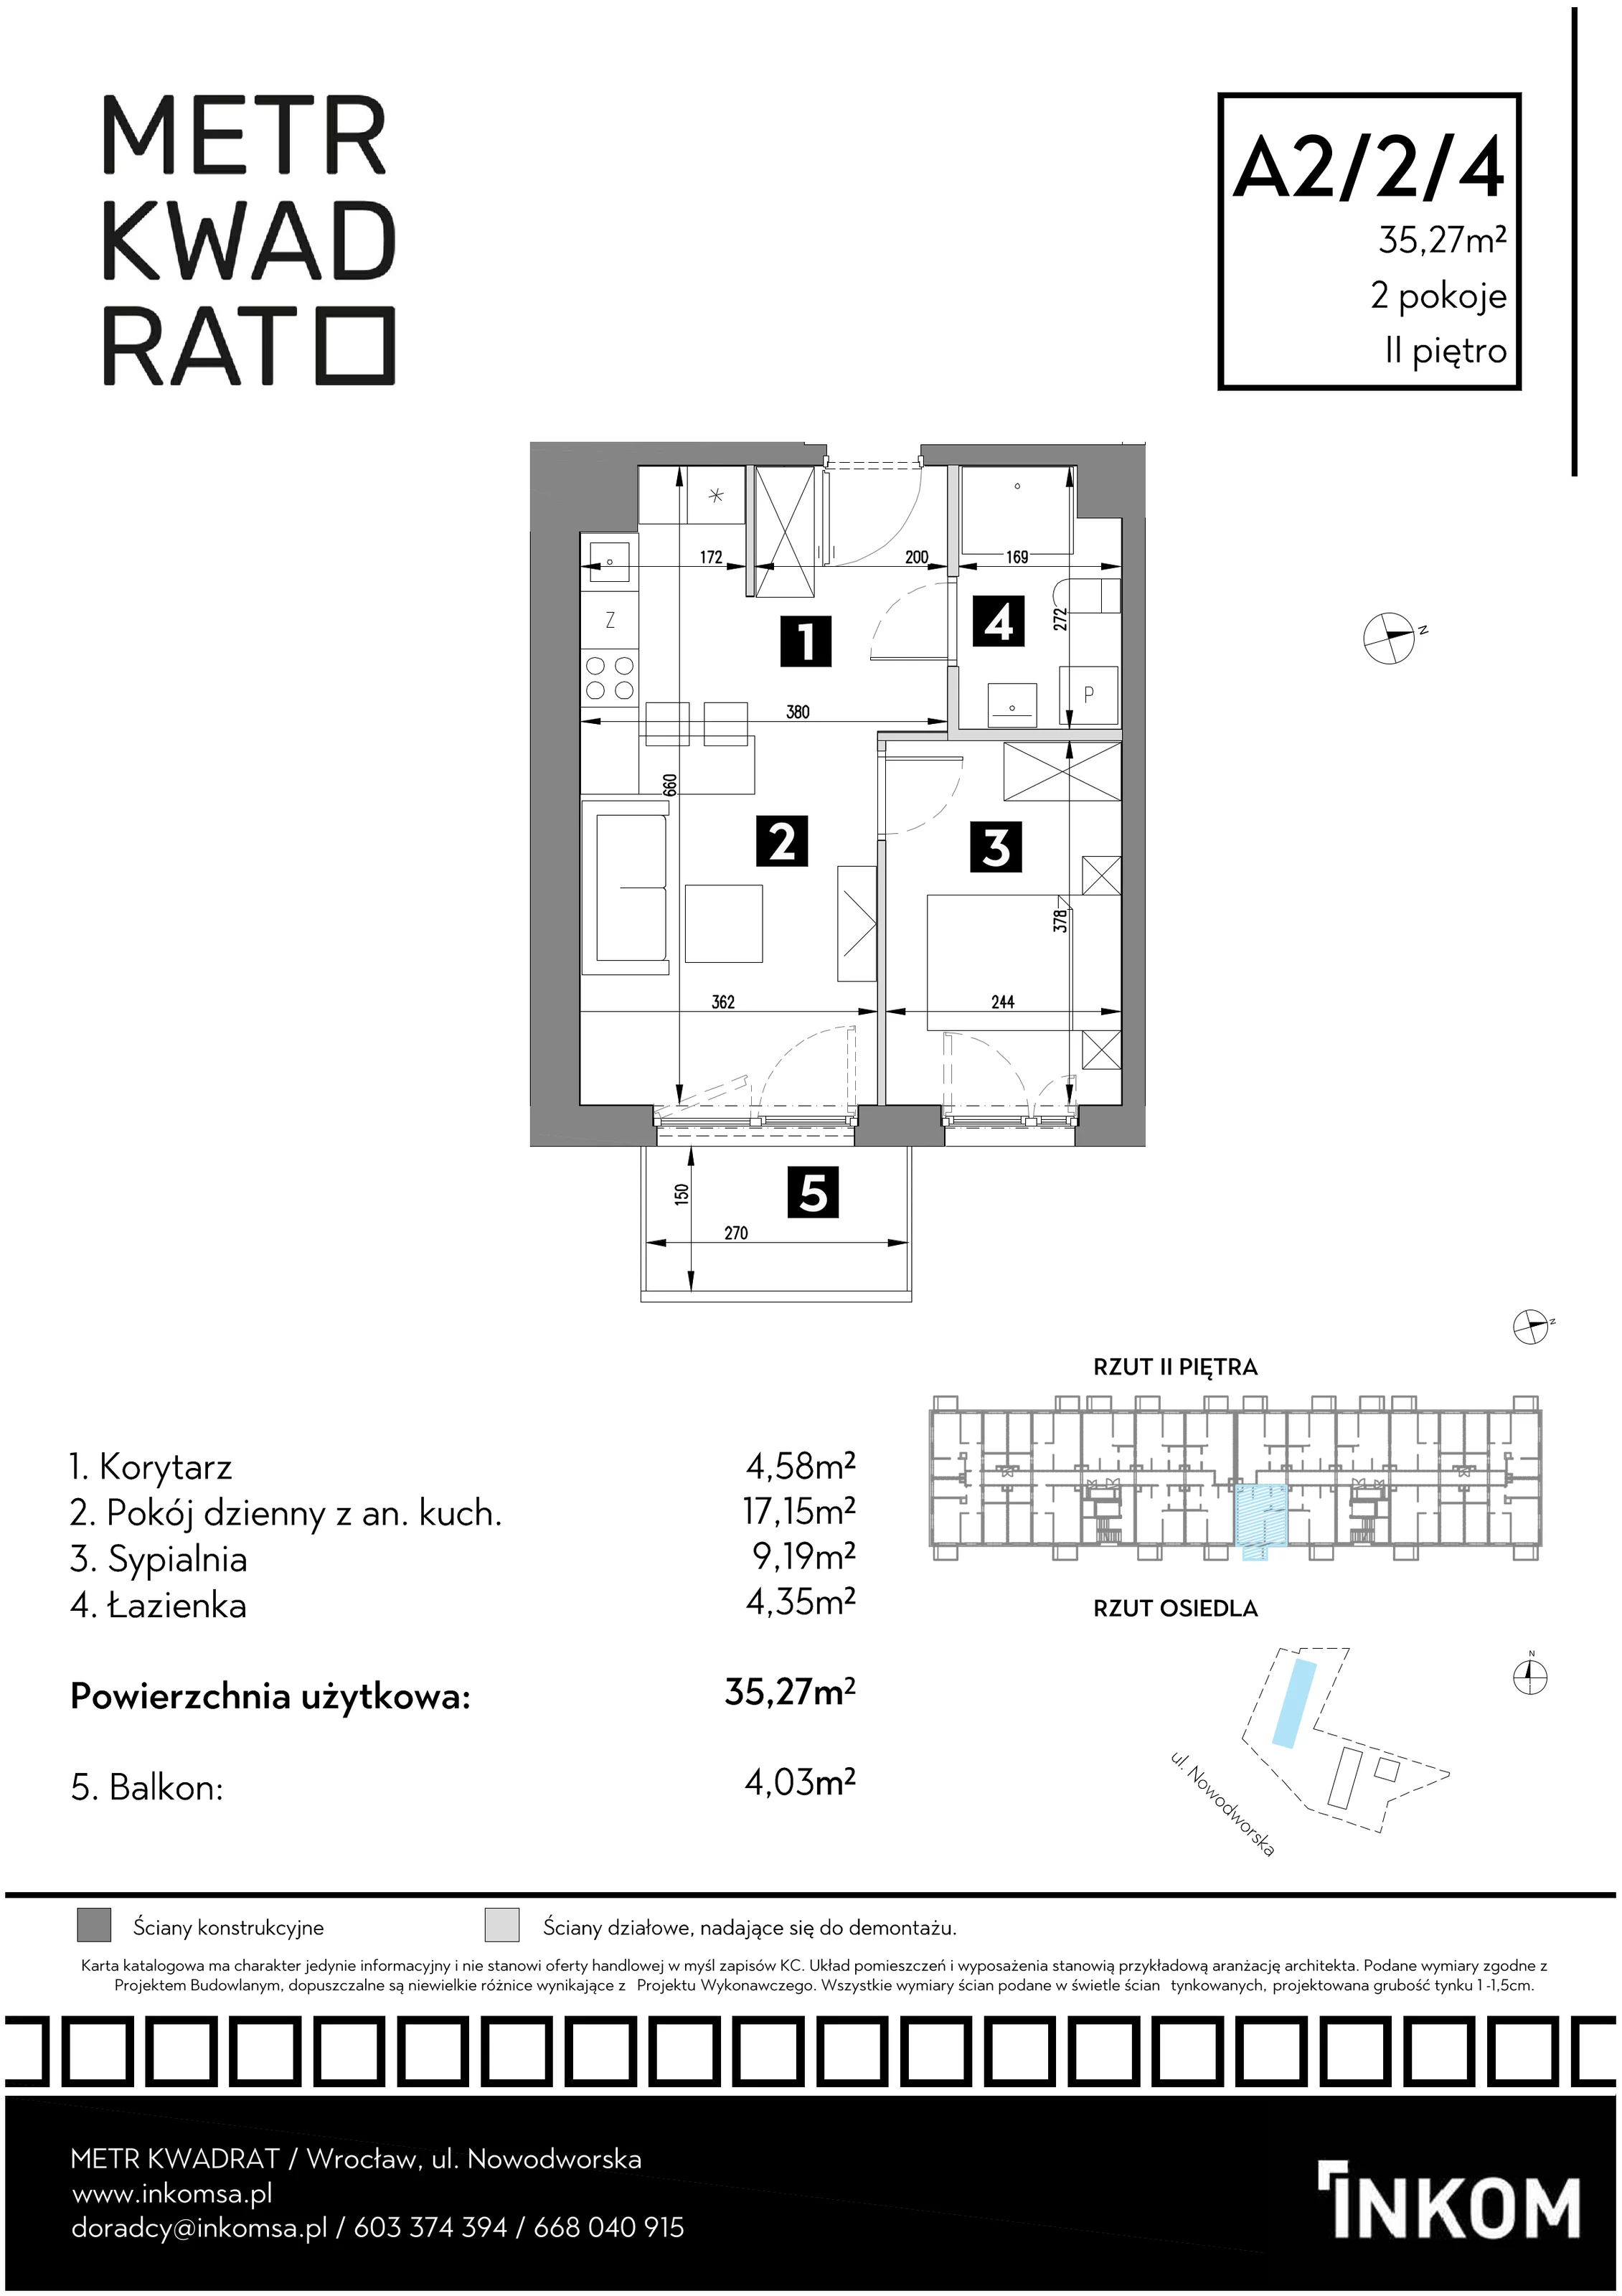 Mieszkanie 35,27 m², piętro 2, oferta nr A2/2/4, Metr Kwadrat, Wrocław, Nowy Dwór, ul. Nowodworska 17B